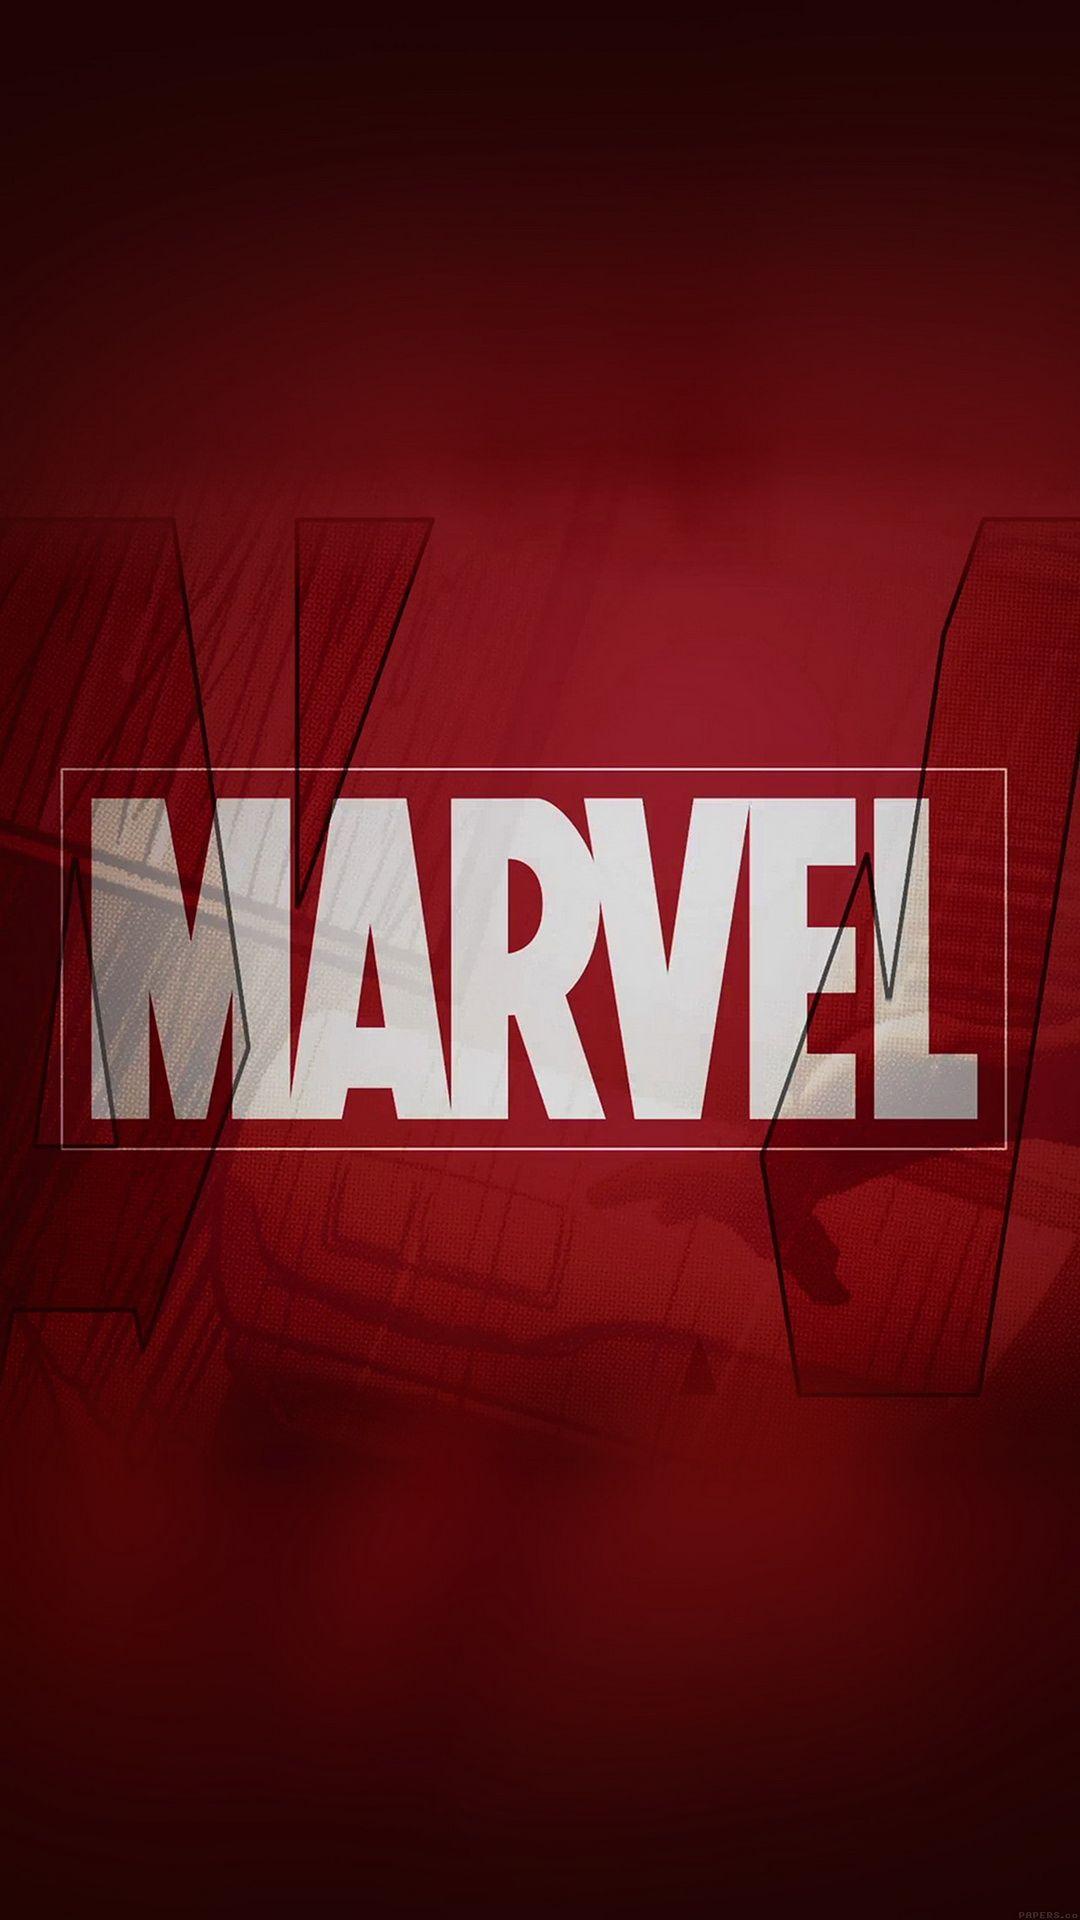 Marvel logo. Marvel wallpaper, Marvel logo, Marvel superheroes